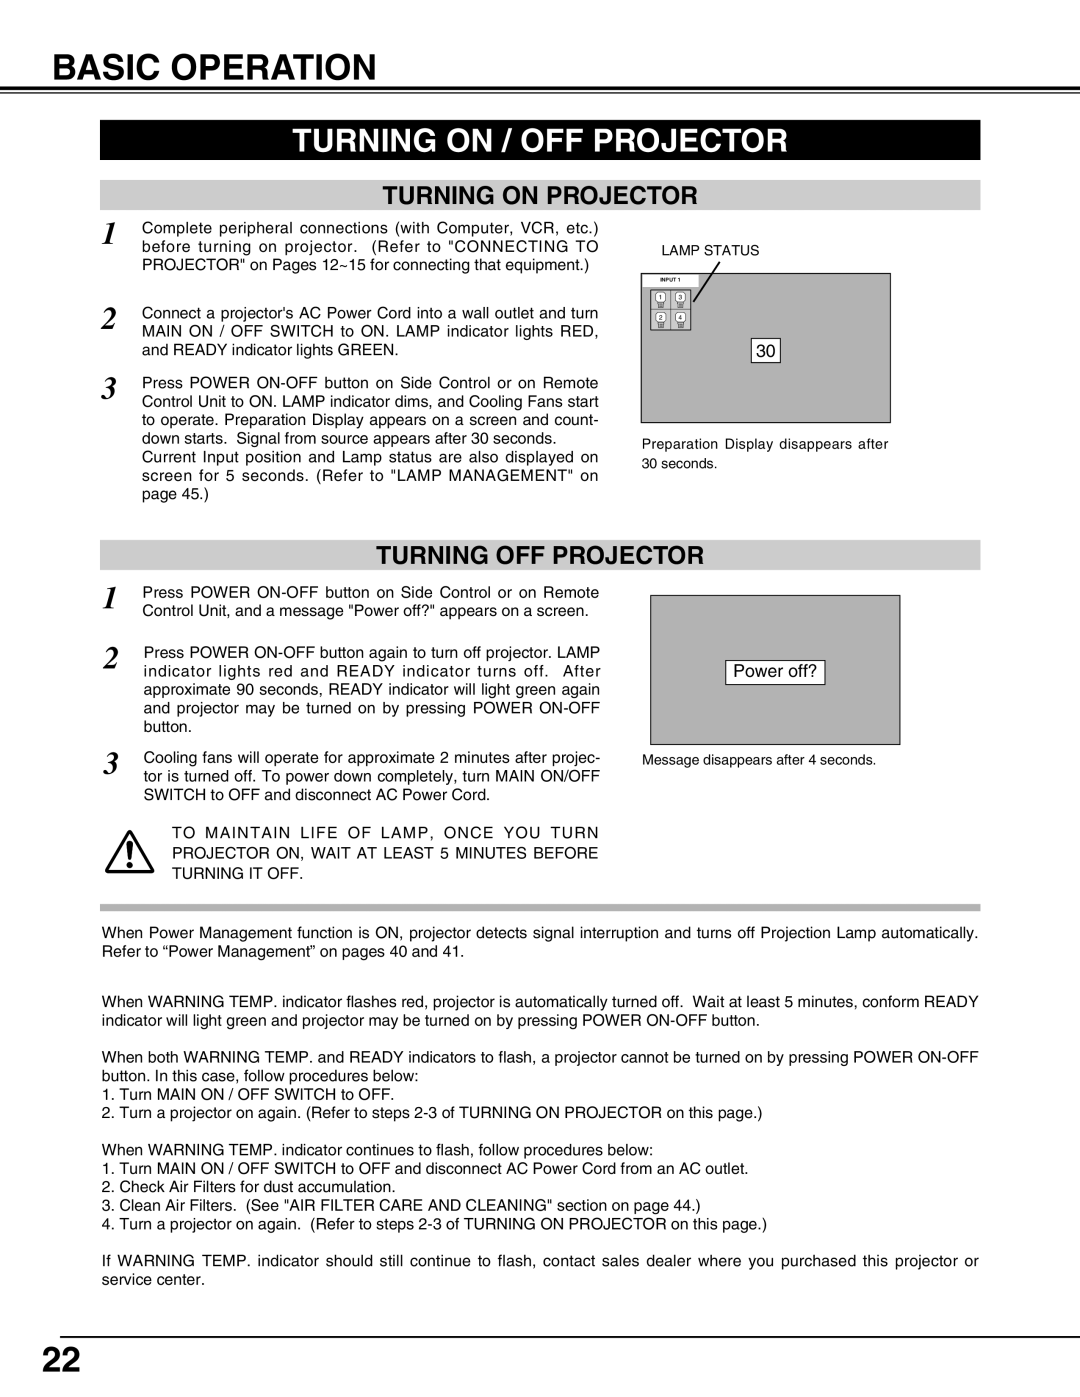 Eiki LC-UXT3 instruction manual Basic Operation, Turning On / Off Projector, Turning On Projector, Turning Off Projector 